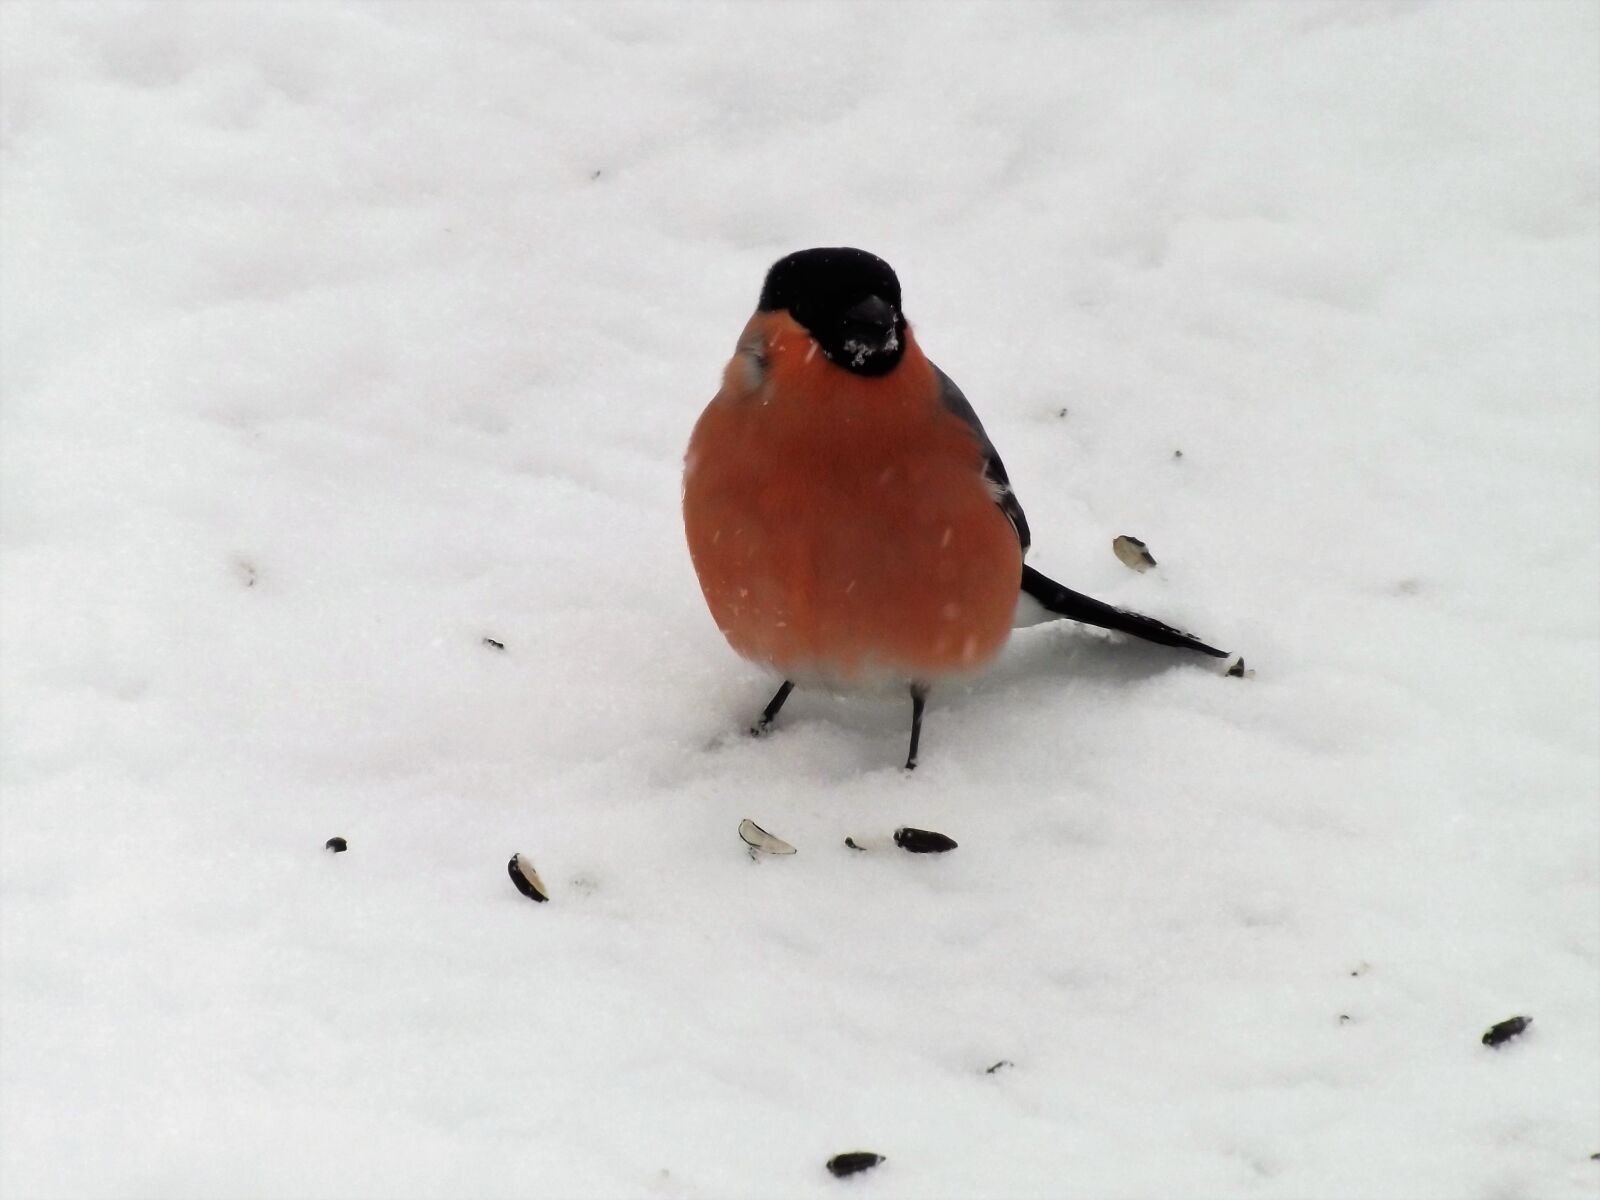 Fujifilm FinePix S4300 sample photo. снегирь, зима, птица photography